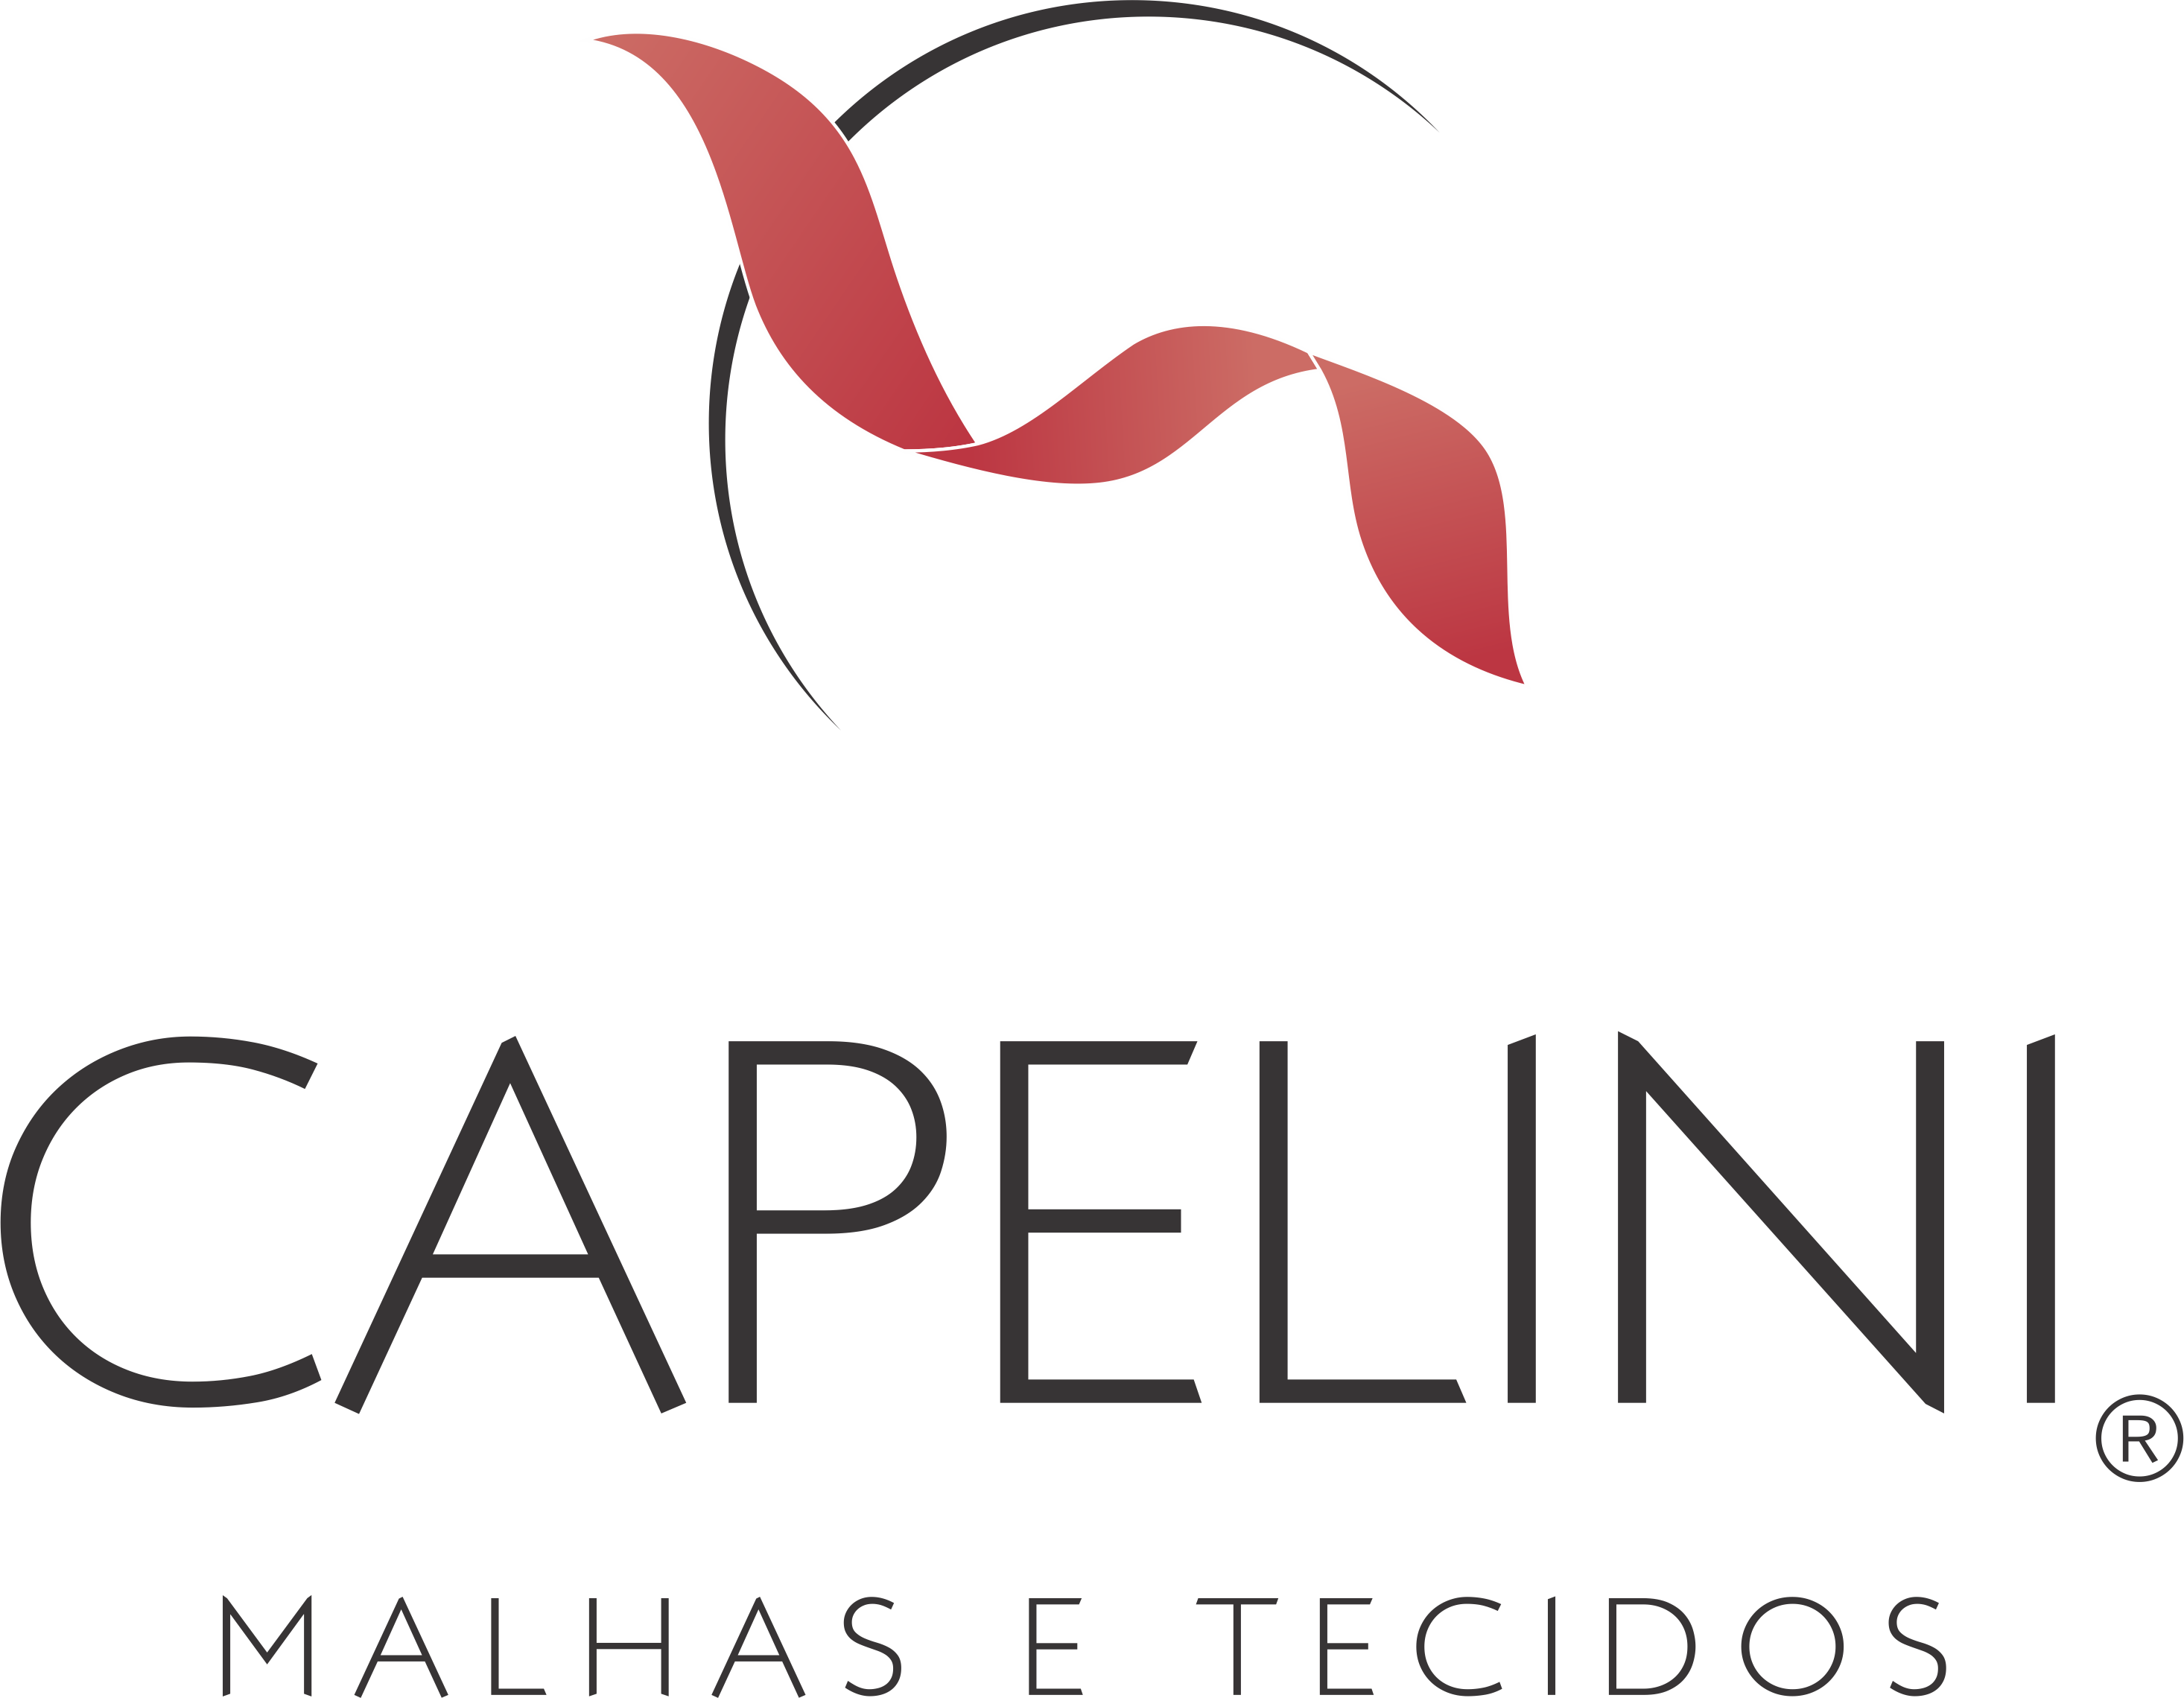 Capelini